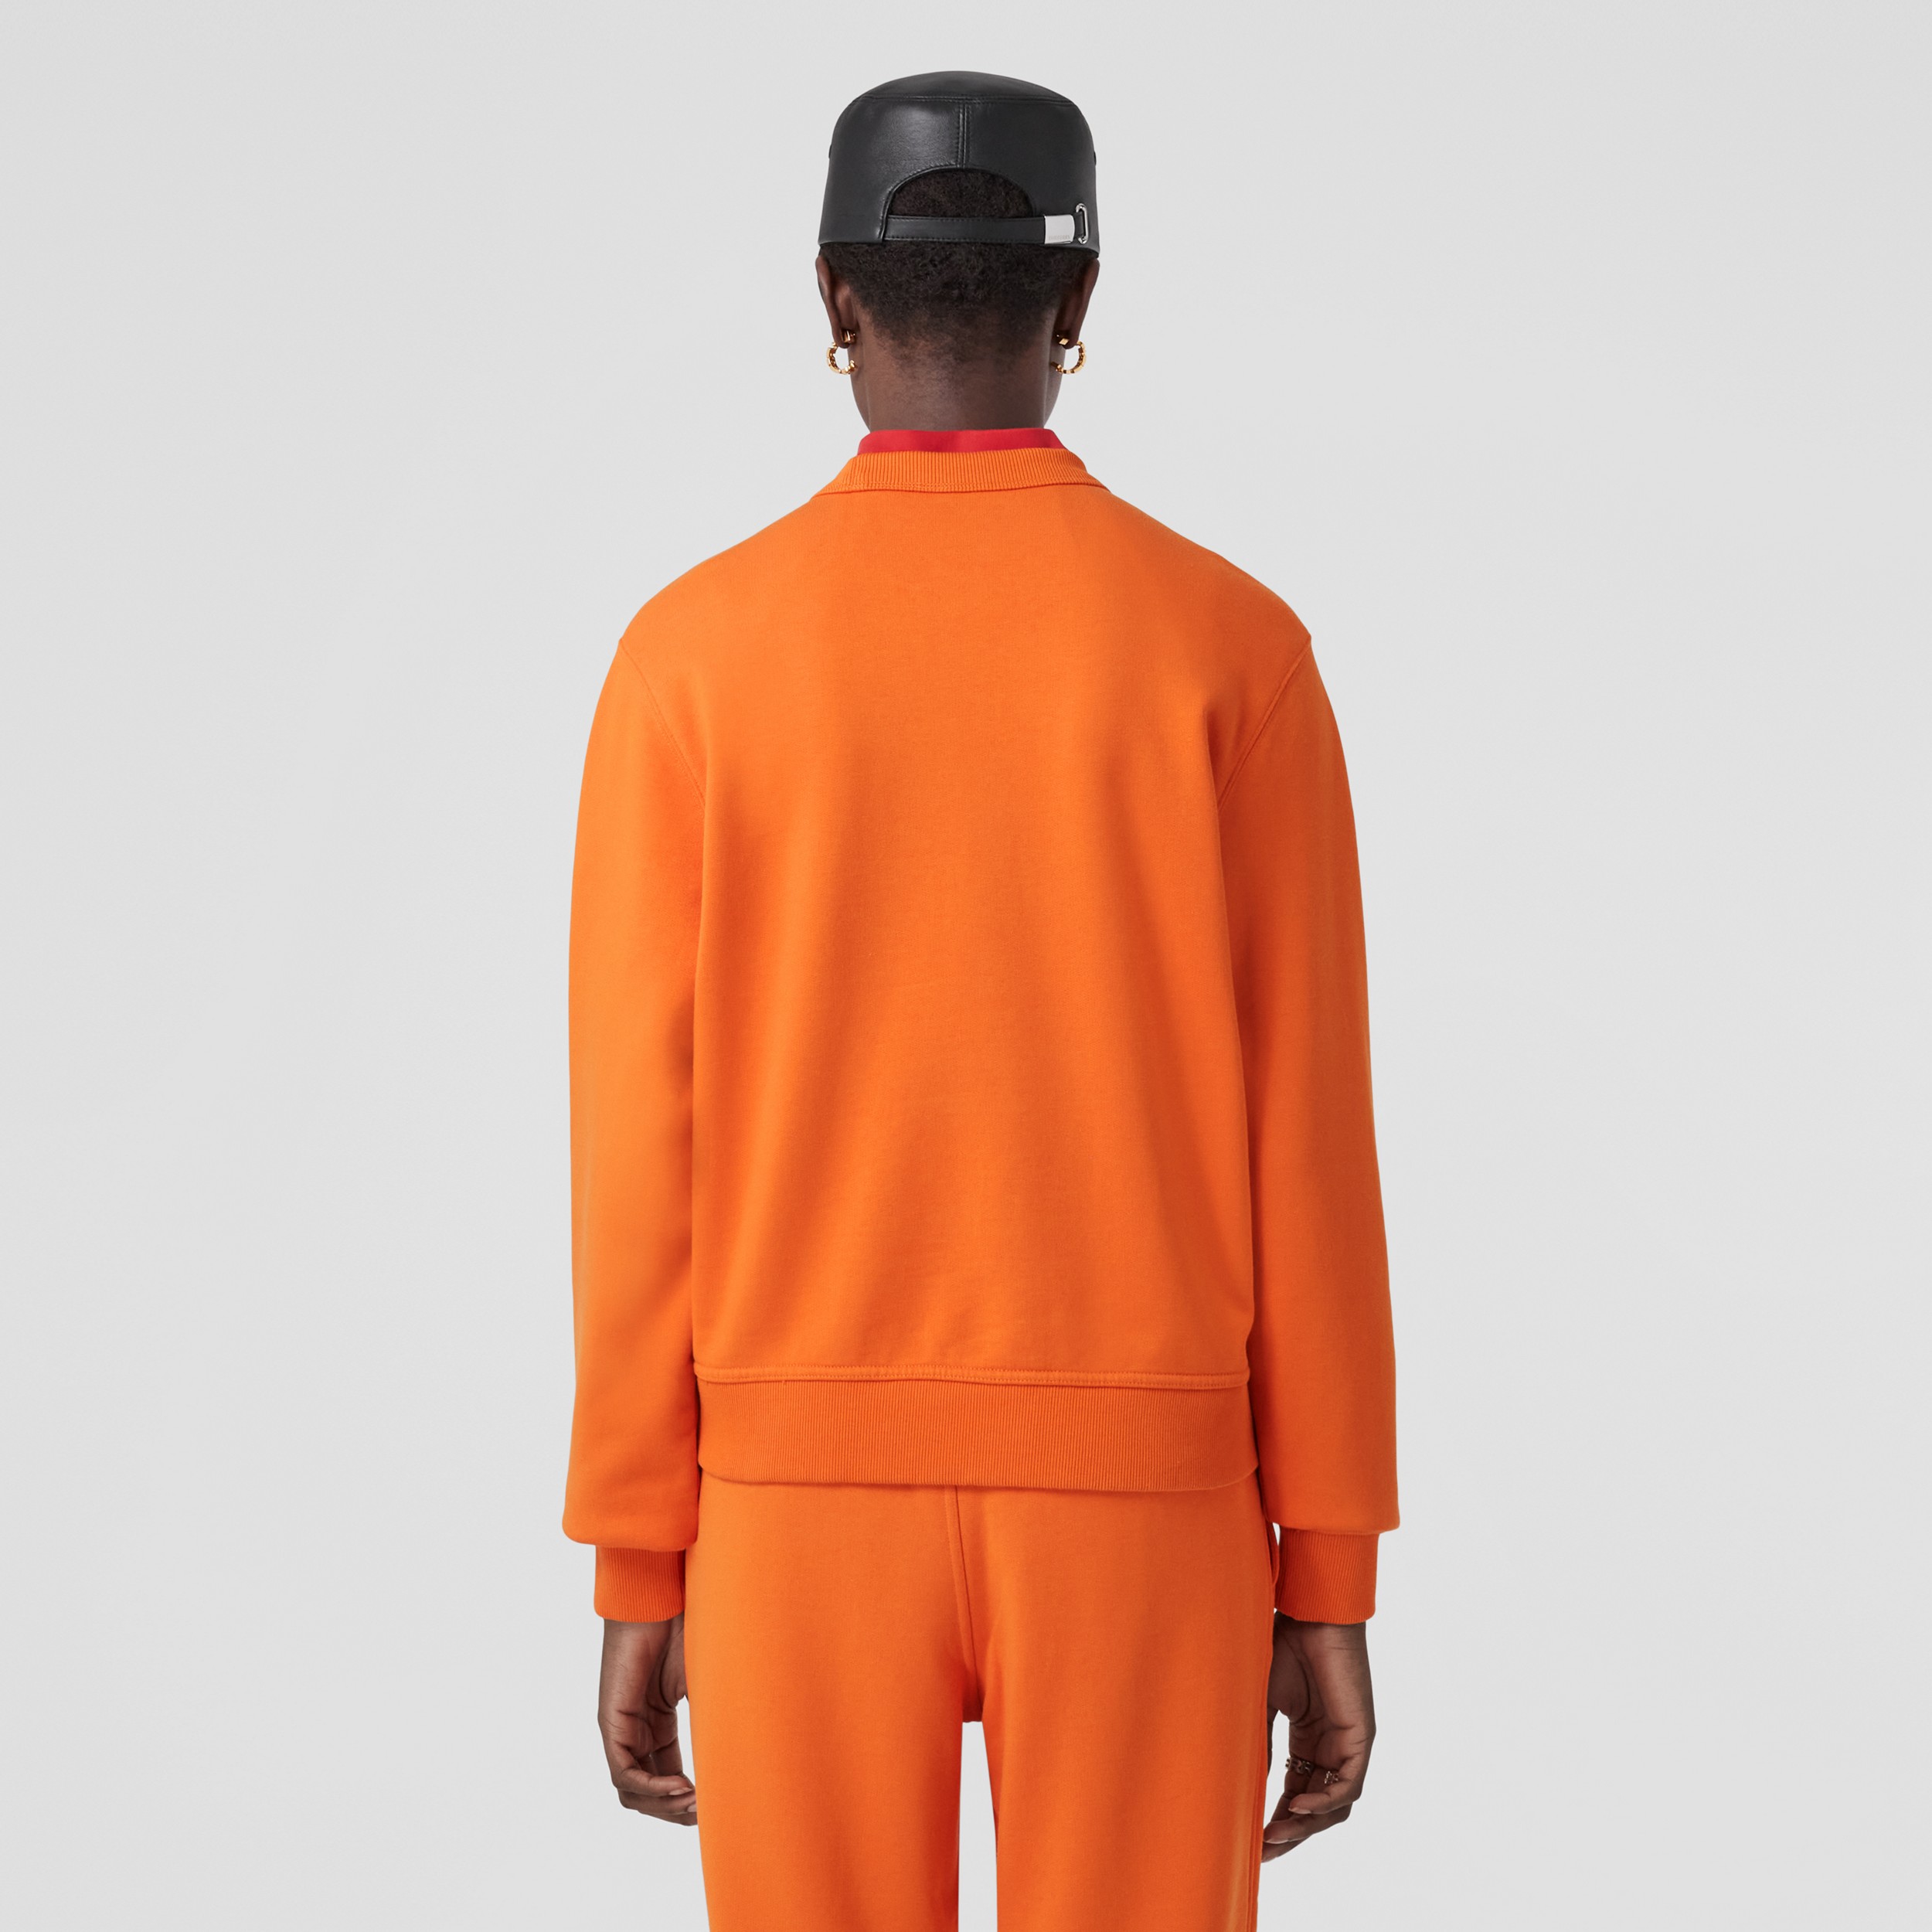 Baumwollsweatshirt mit gesticktem Eichenblatt-Emblem (Leuchtendes Orange) - Damen | Burberry® - 3